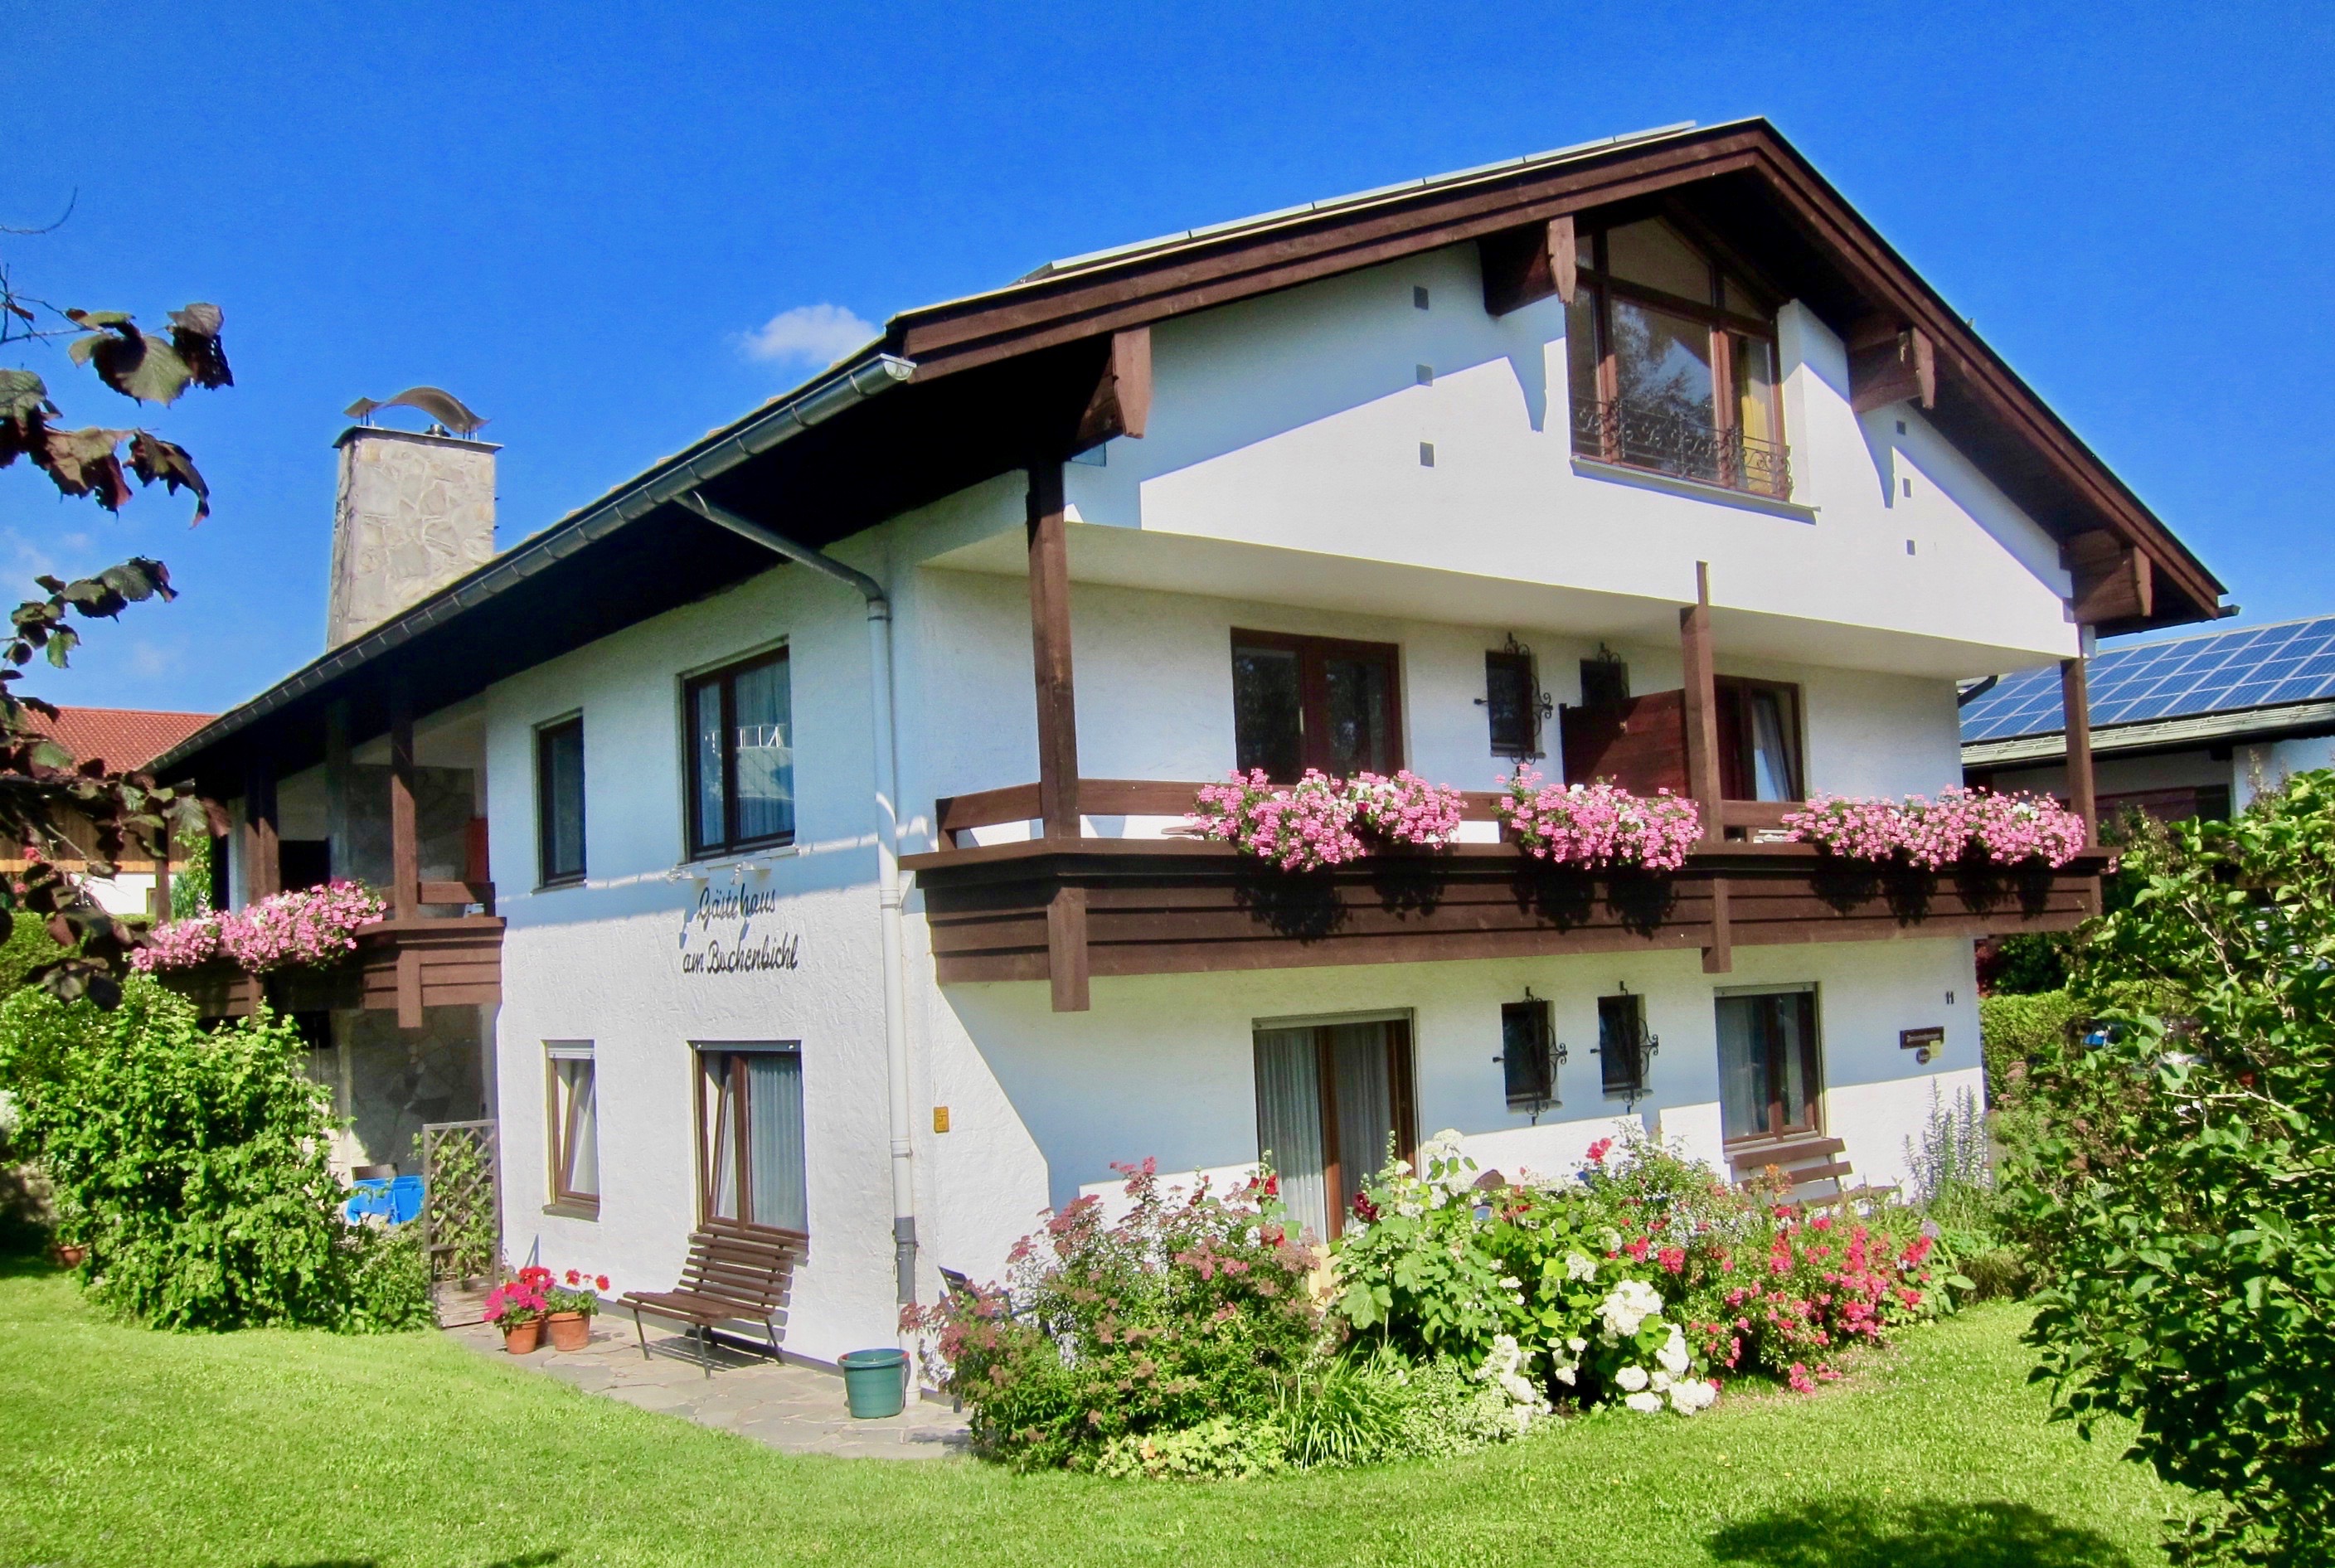 Ferienwohnung Gästehaus Am Buchenbichl (DE Sc Ferienwohnung in den Alpen